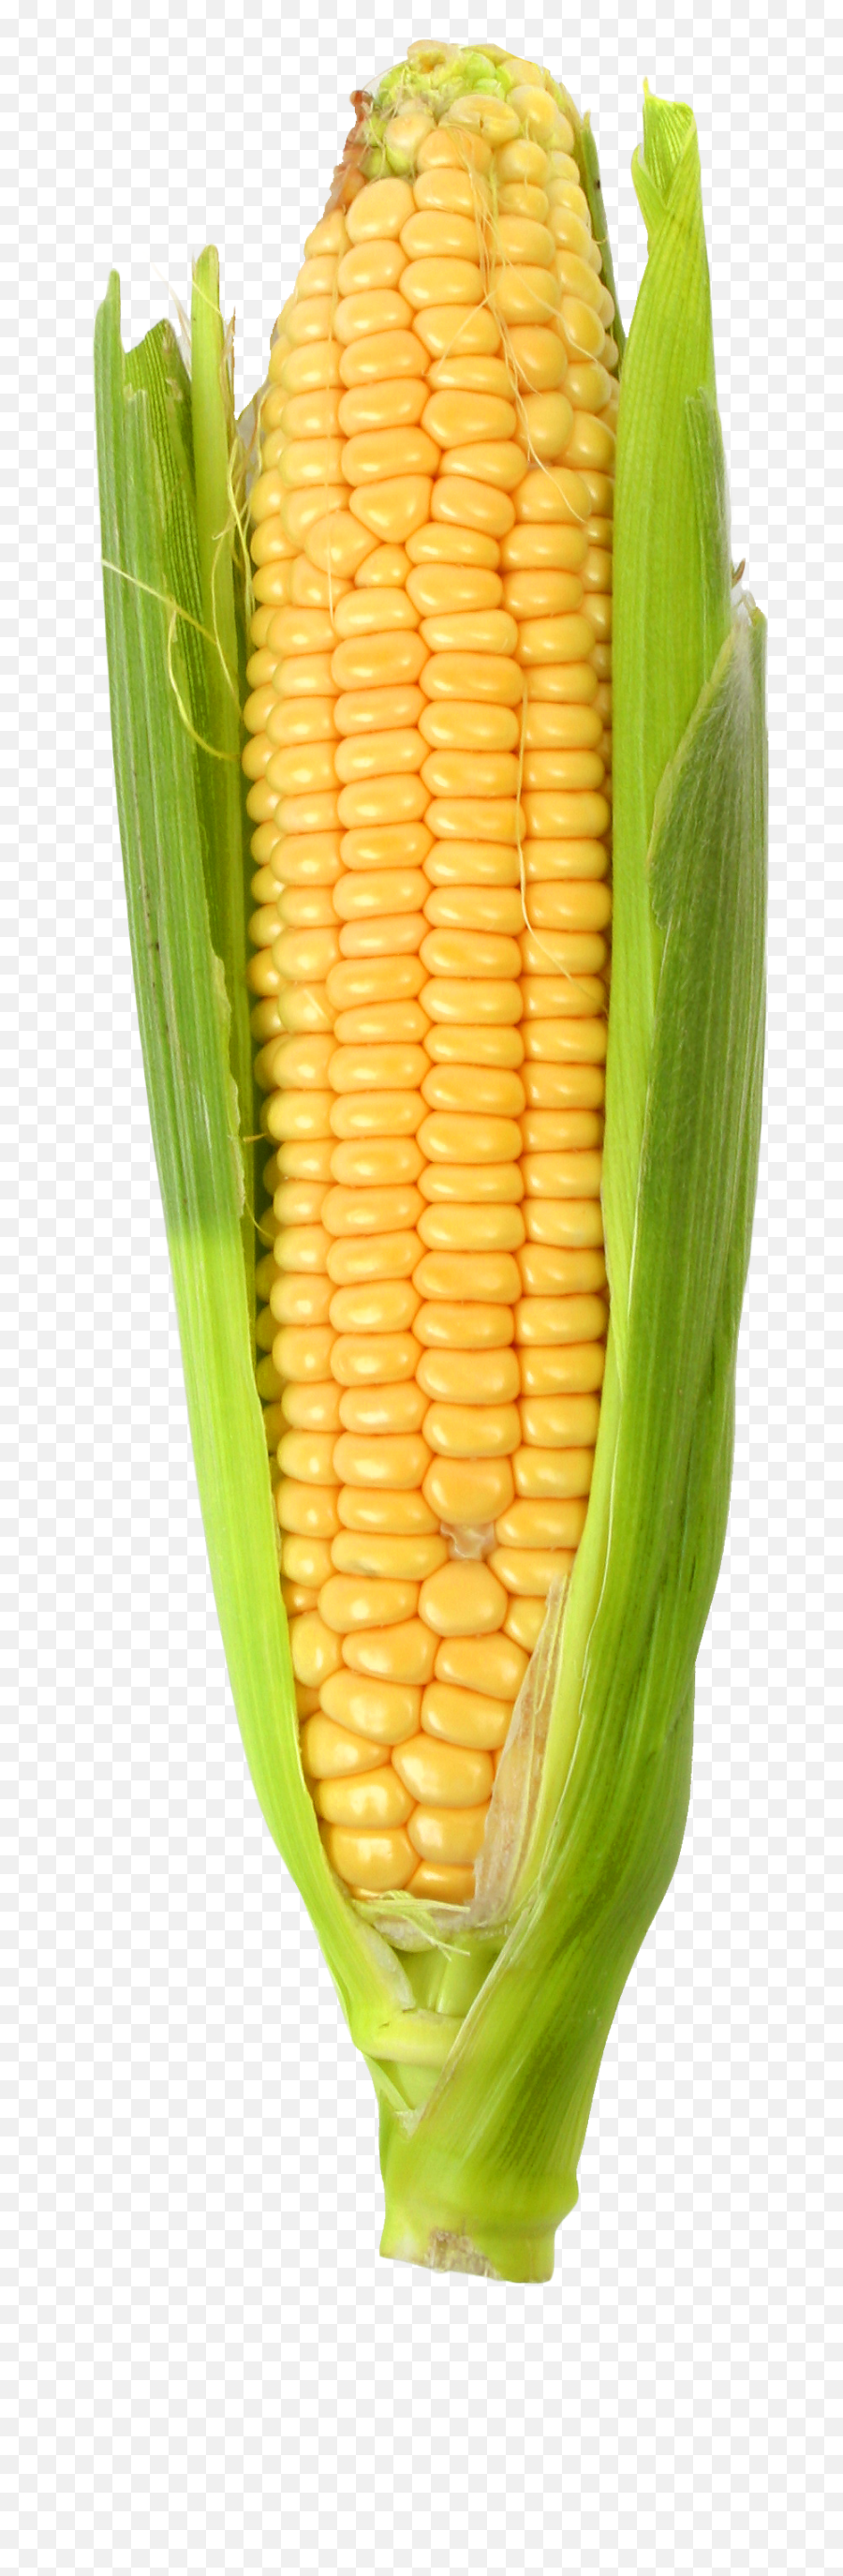 Corn Cob Png Picture - Corn On The Cob Png,Corn Cob Png